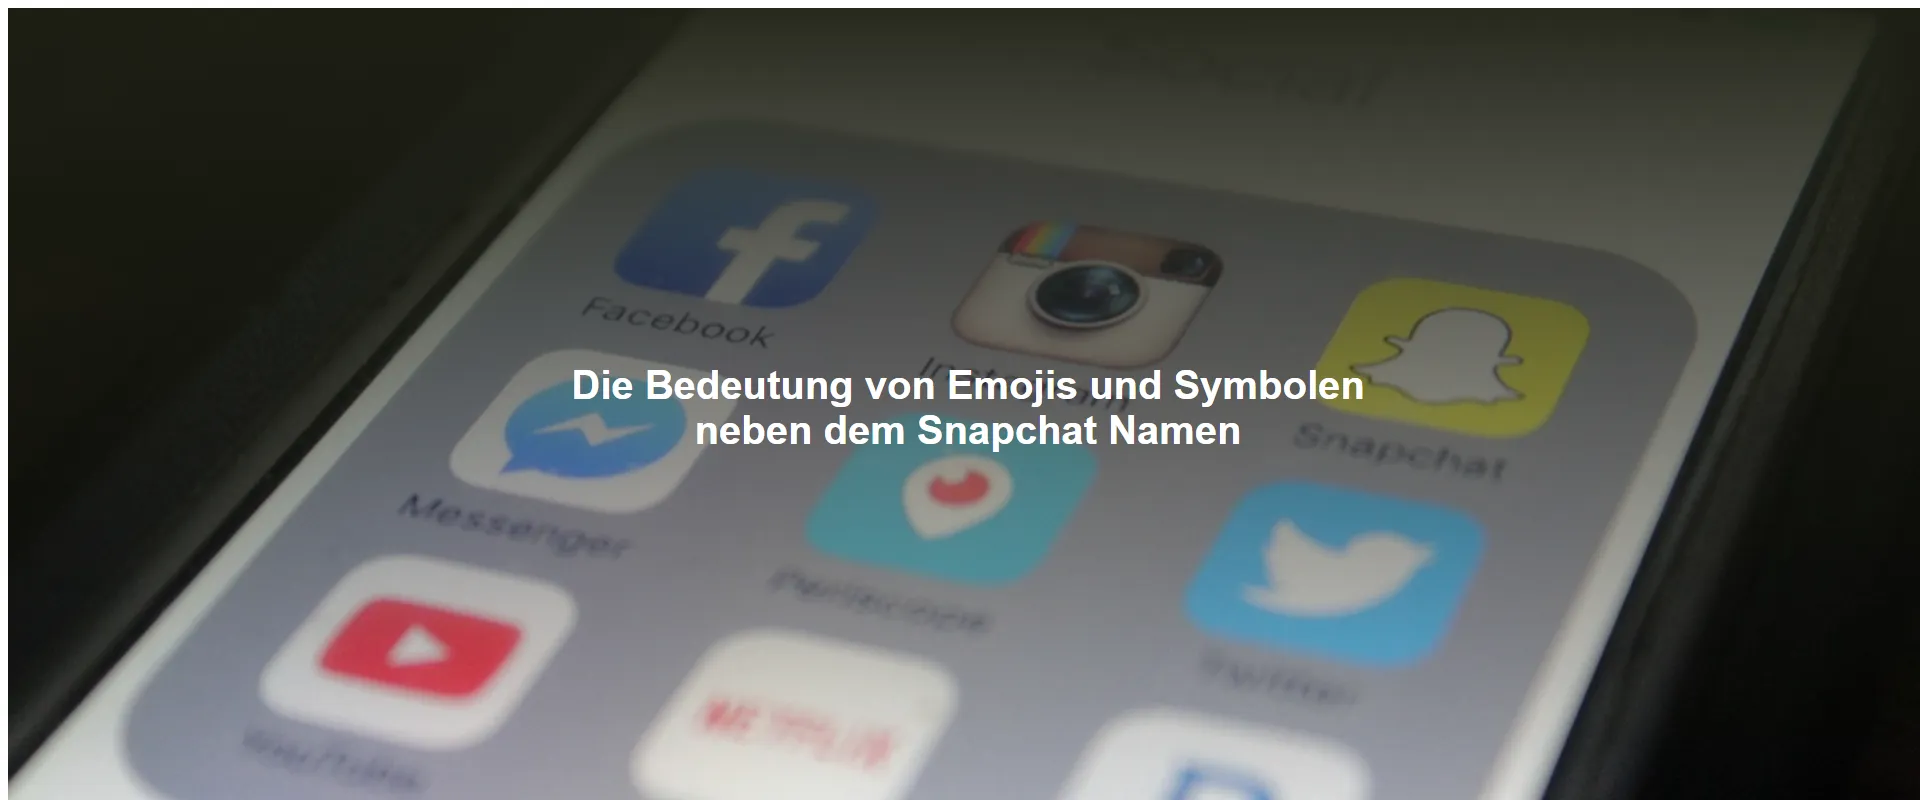 Die Bedeutung von Emojis und Symbolen neben dem Snapchat Namen